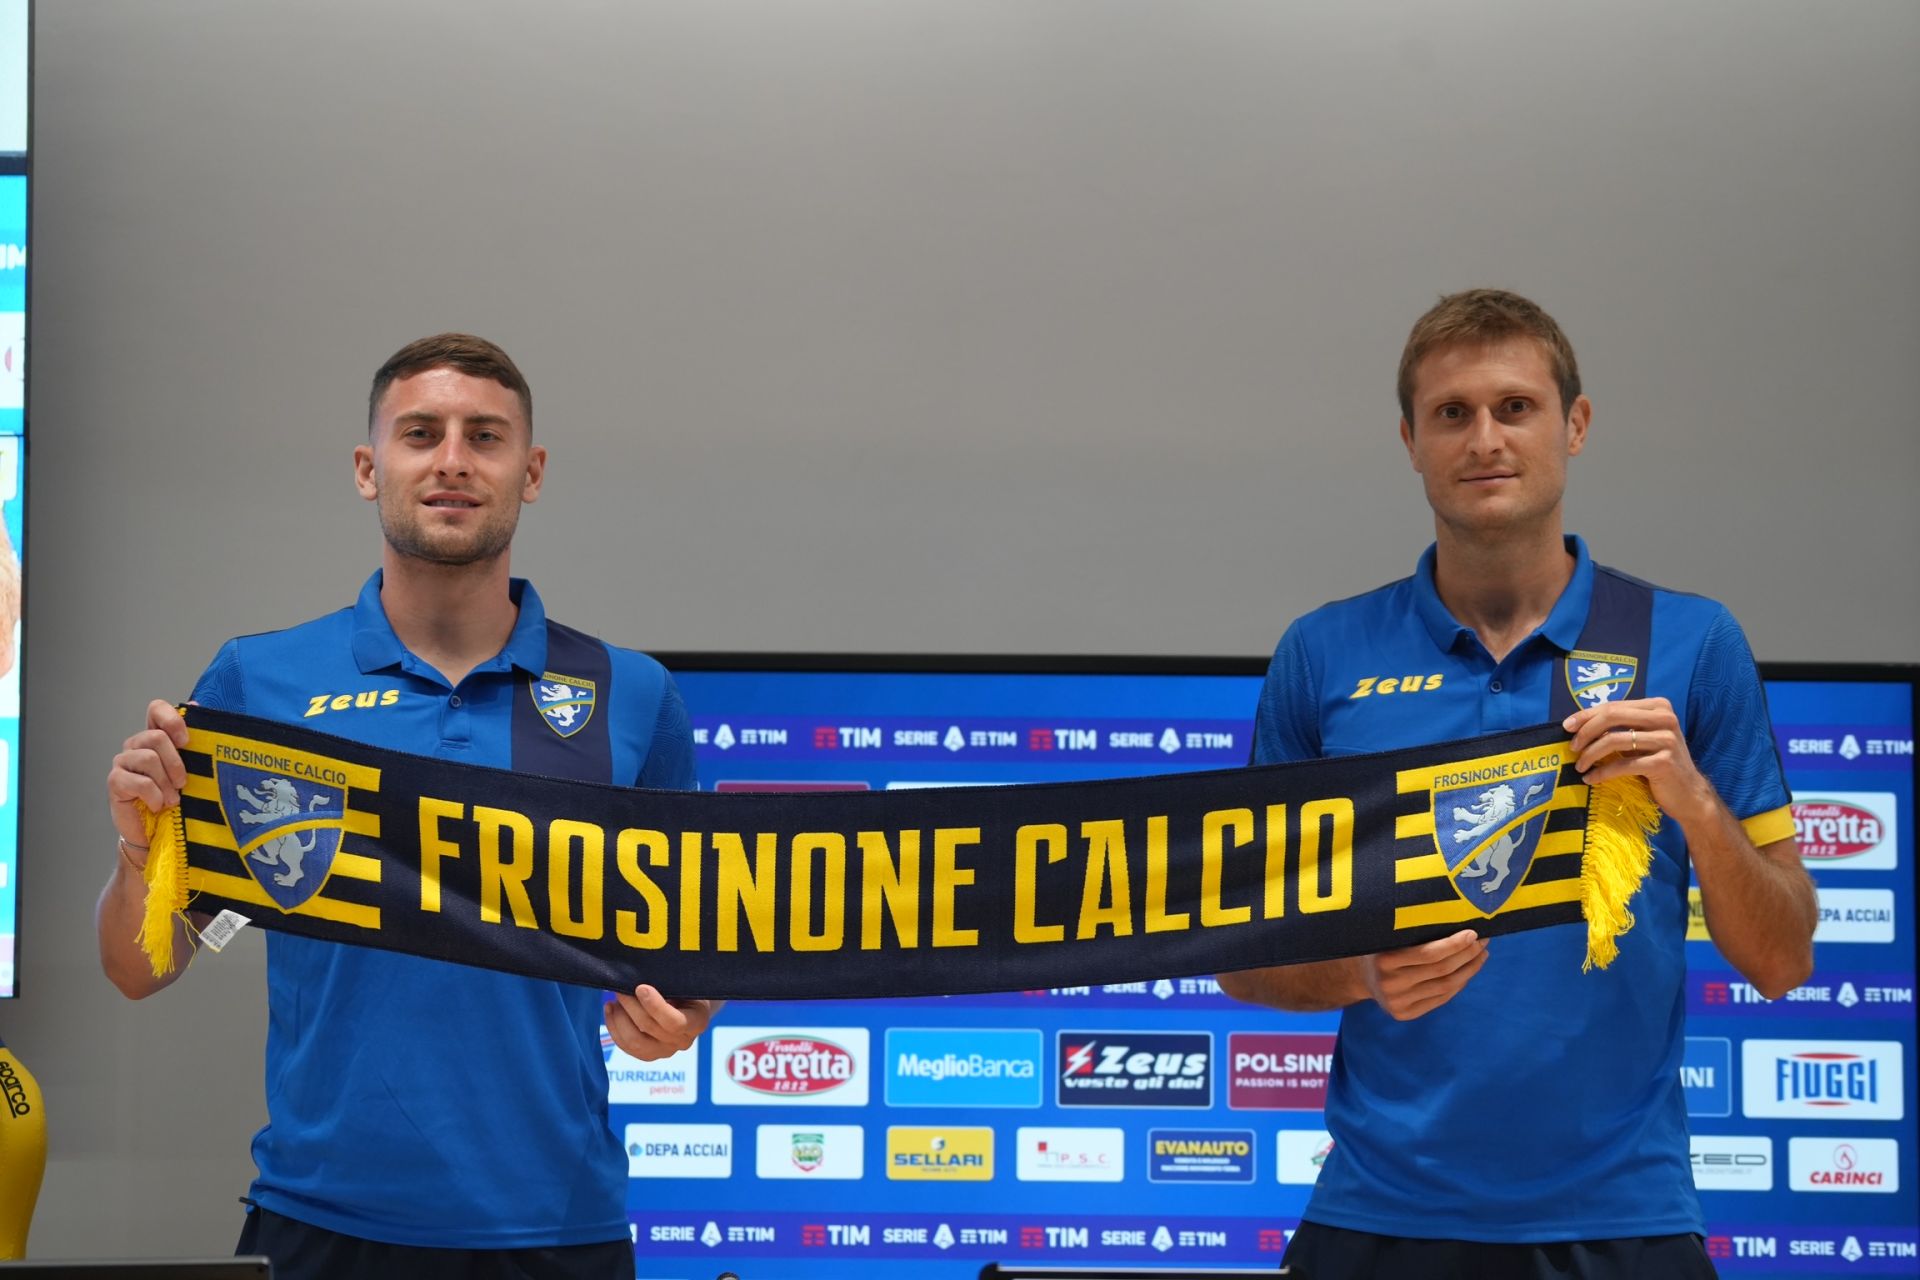 Michele Cerofolini :: Frosinone :: Player Profile 